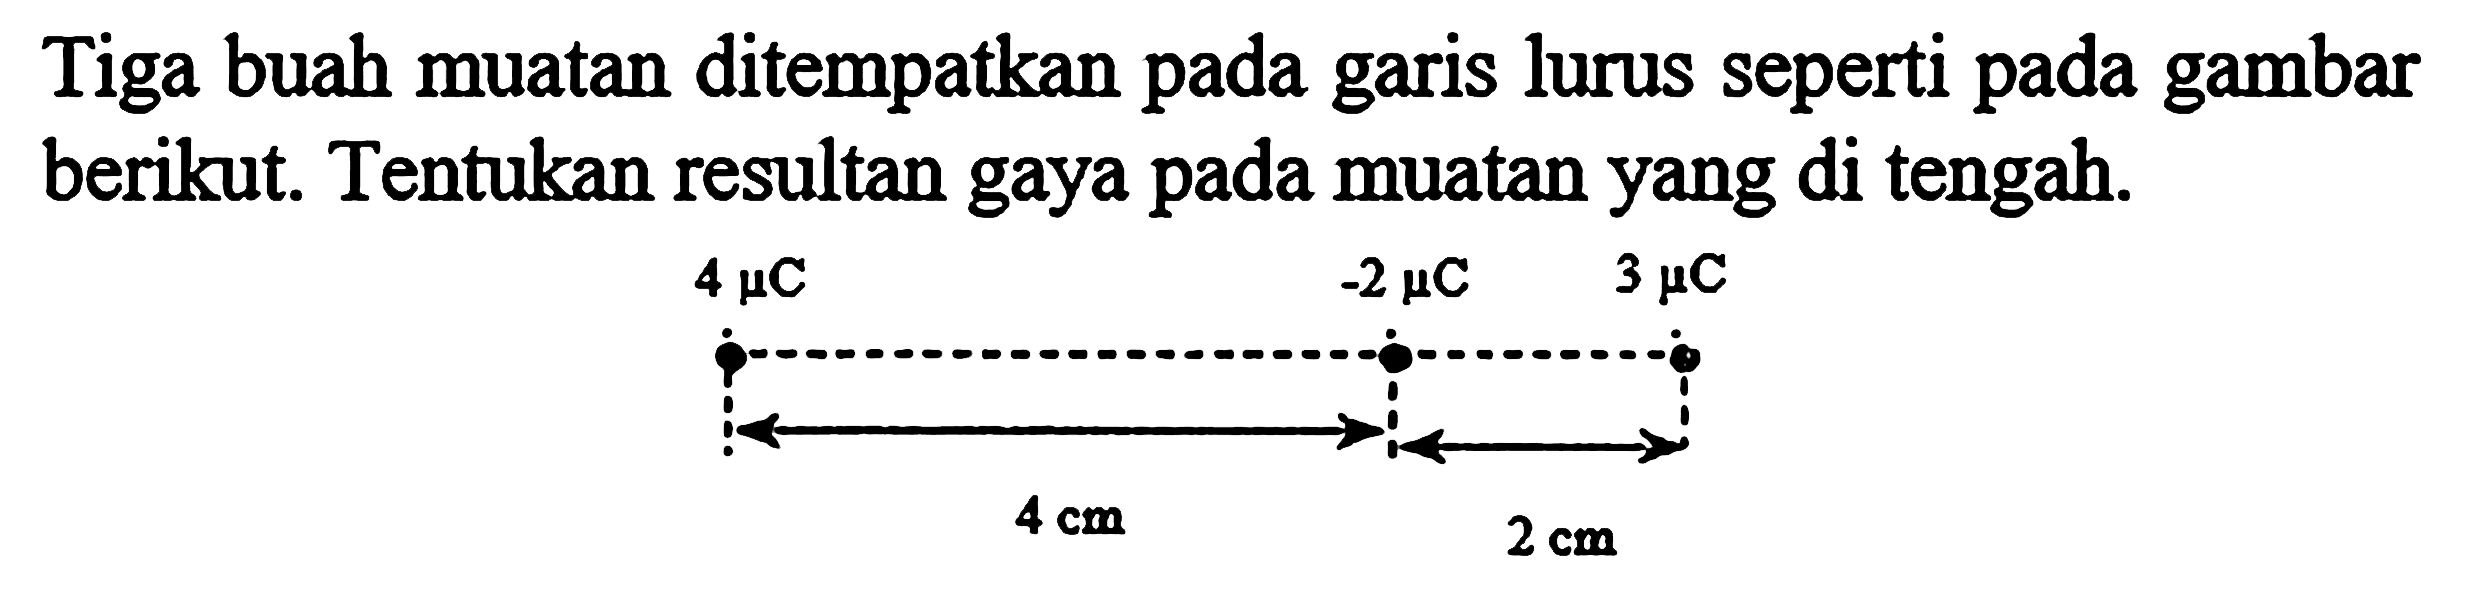 Tiga buah muatan ditempatkan pada garis lurus seperti pada gambar berikut. Tentukan resultan gaya pada muatan yang di tengah.4 mu C 4 cm -2 mu C 2 cm 3 mu C